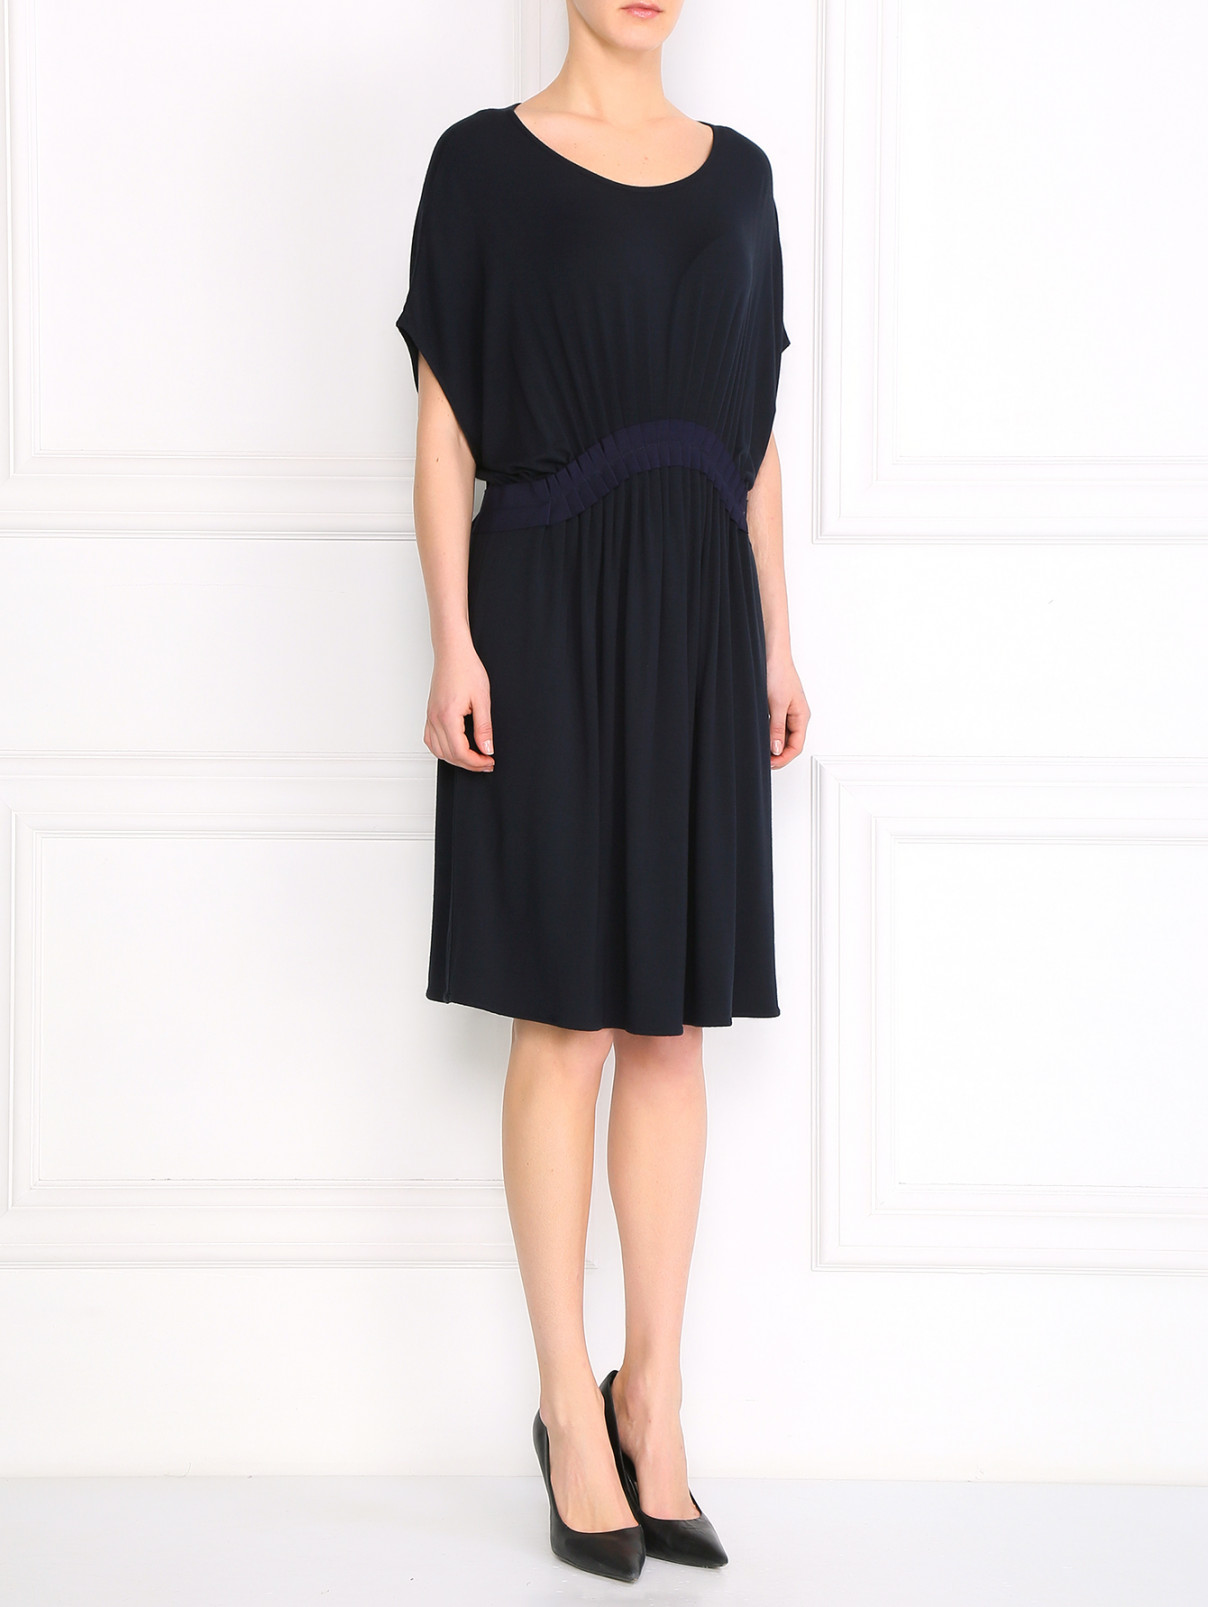 Платье со сборкой на талии Parronchi Cashmere  –  Модель Общий вид  – Цвет:  Черный